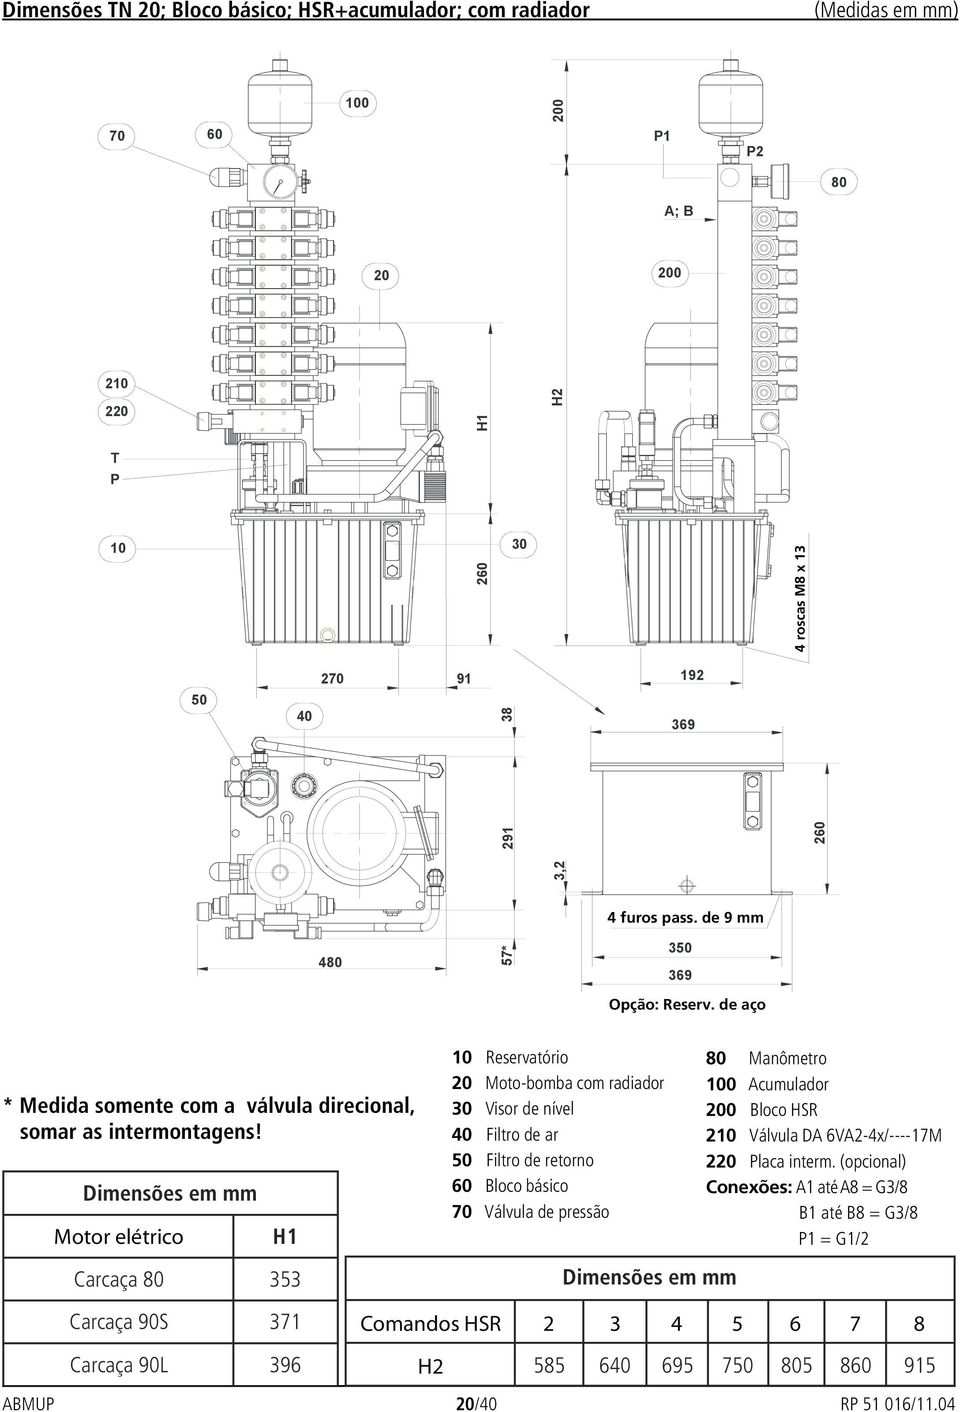 Motor elétrico Reservatório Moto-bomba com radiador Visor de nível Filtro de ar Filtro de retorno Válvula de pressão Manômetro 0 Acumulador 0 Bloco